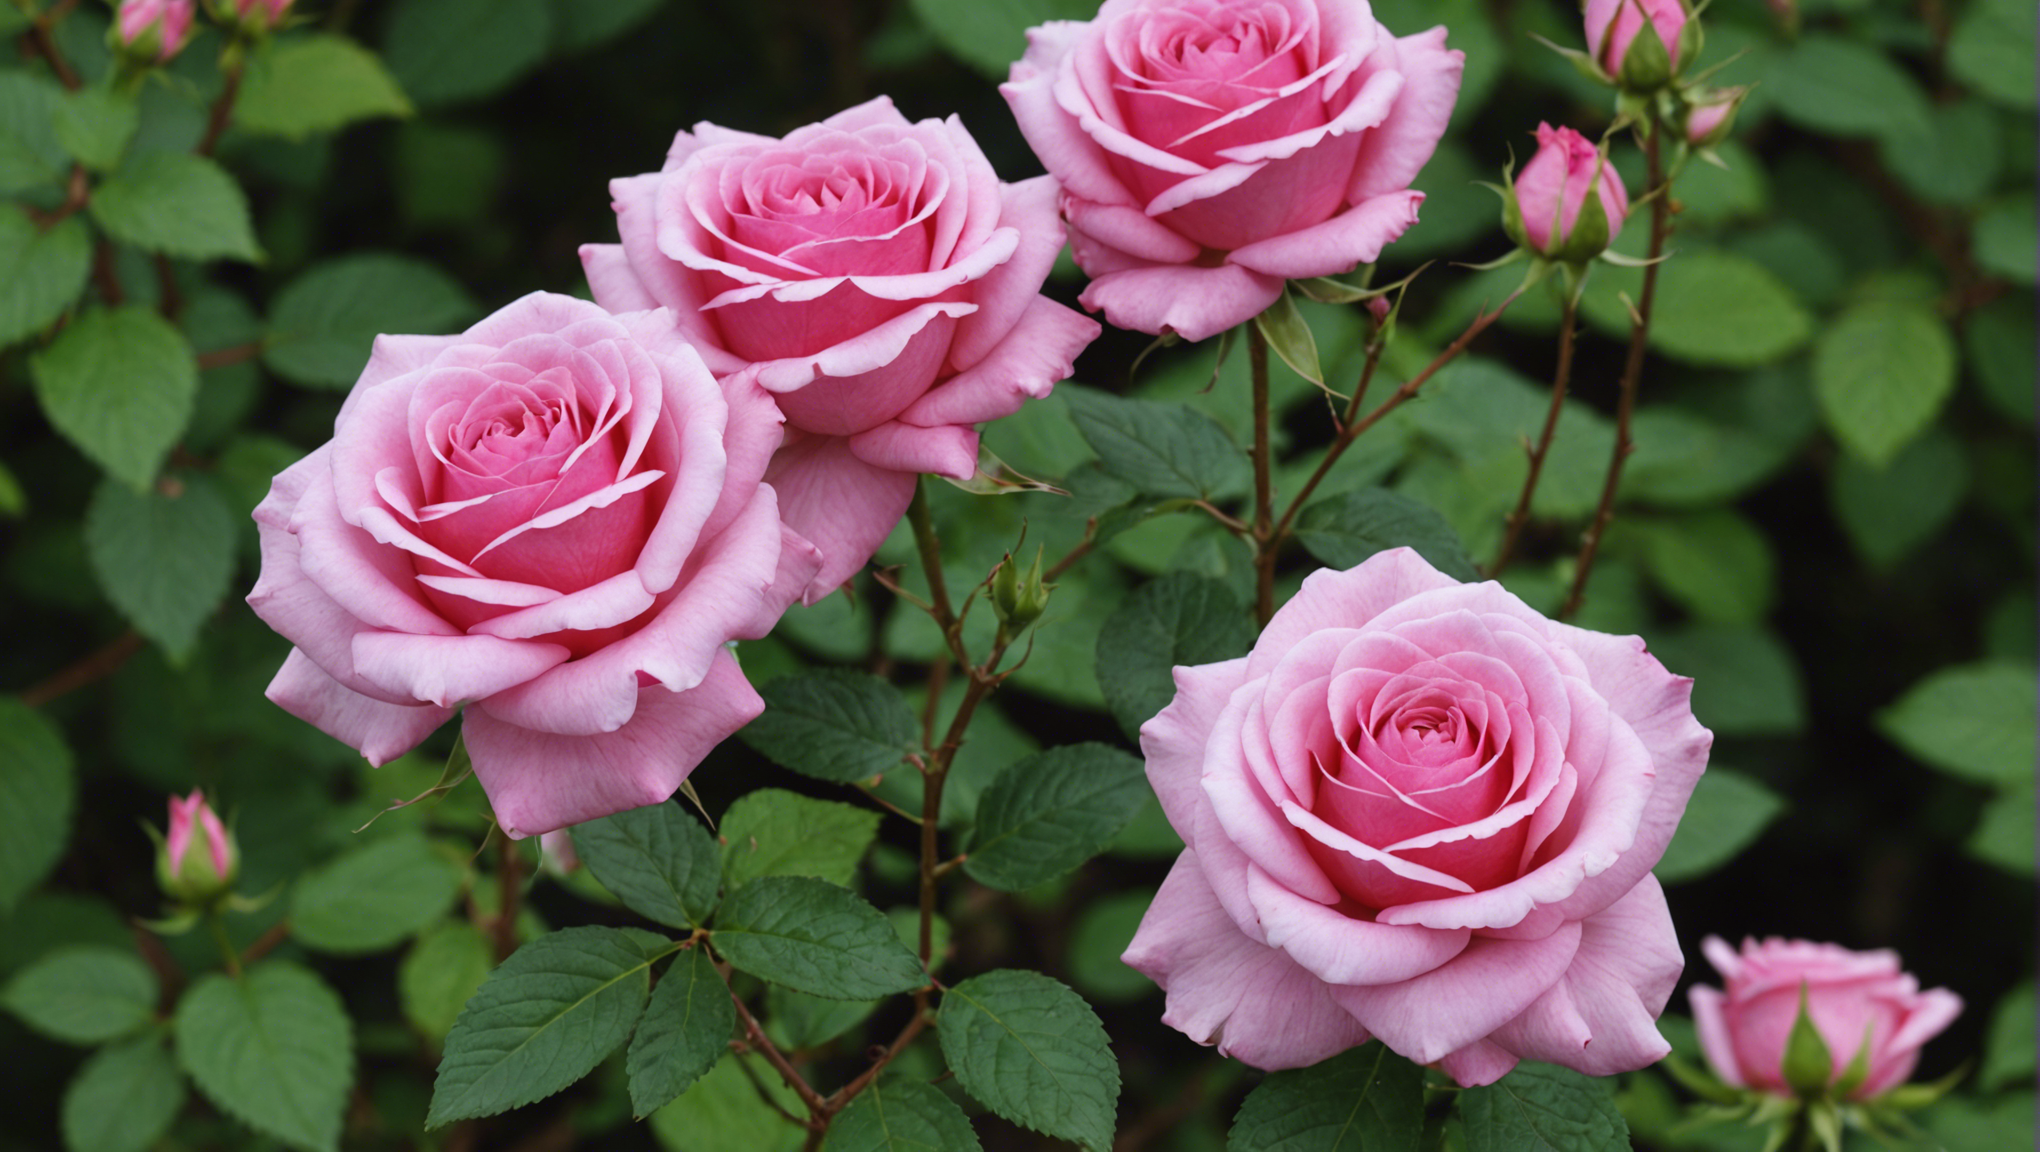 découvrez les étapes clés pour tailler un laurier rose et favoriser sa santé et sa floraison : conseils, outils nécessaires et meilleures périodes pour tailler.